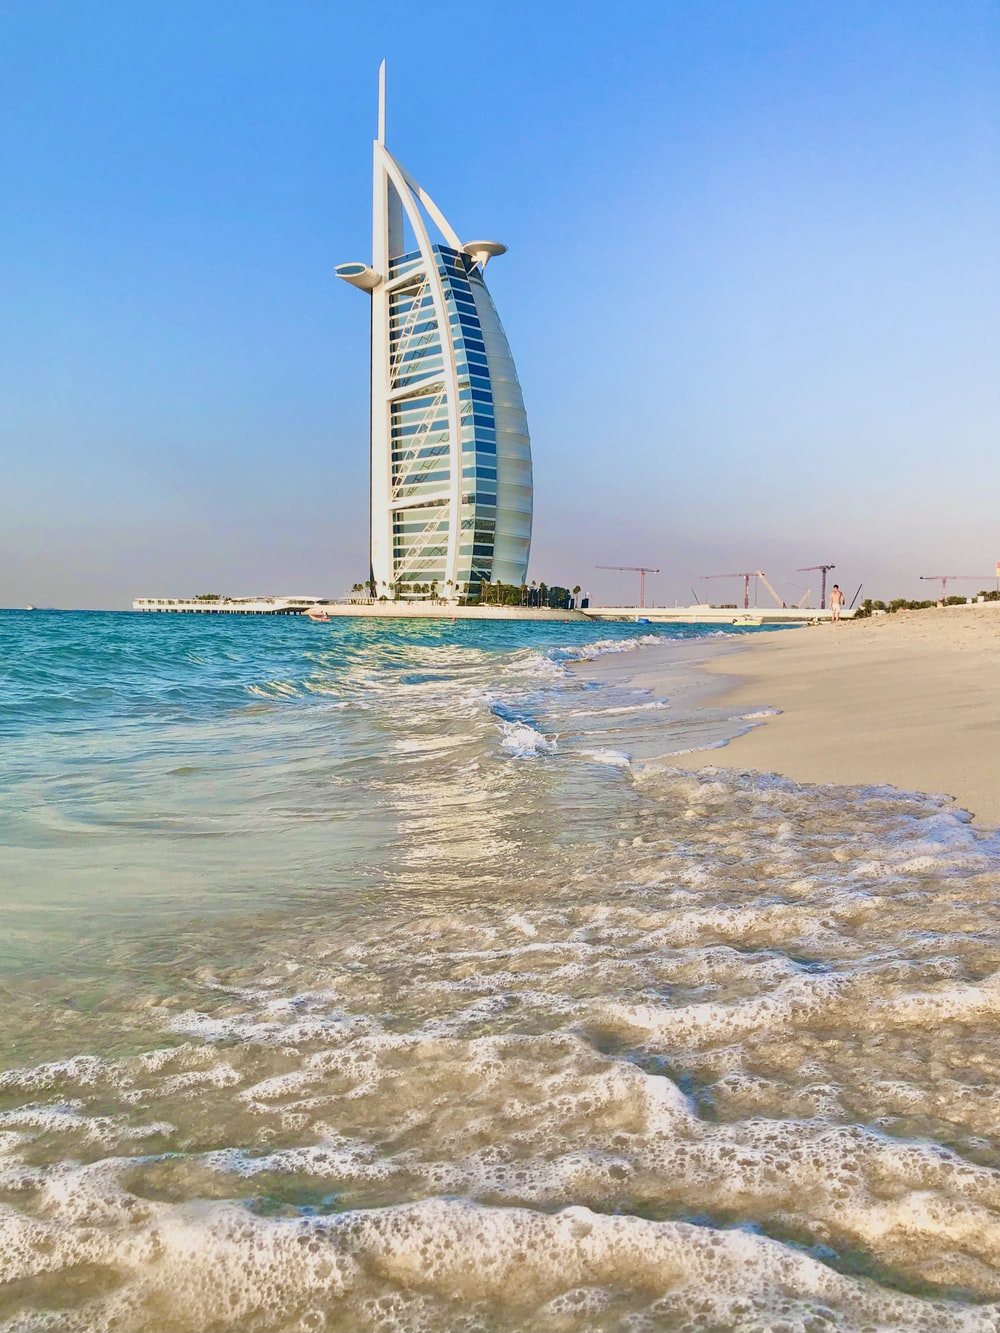 Dubai Beach Picture. Download Free Image